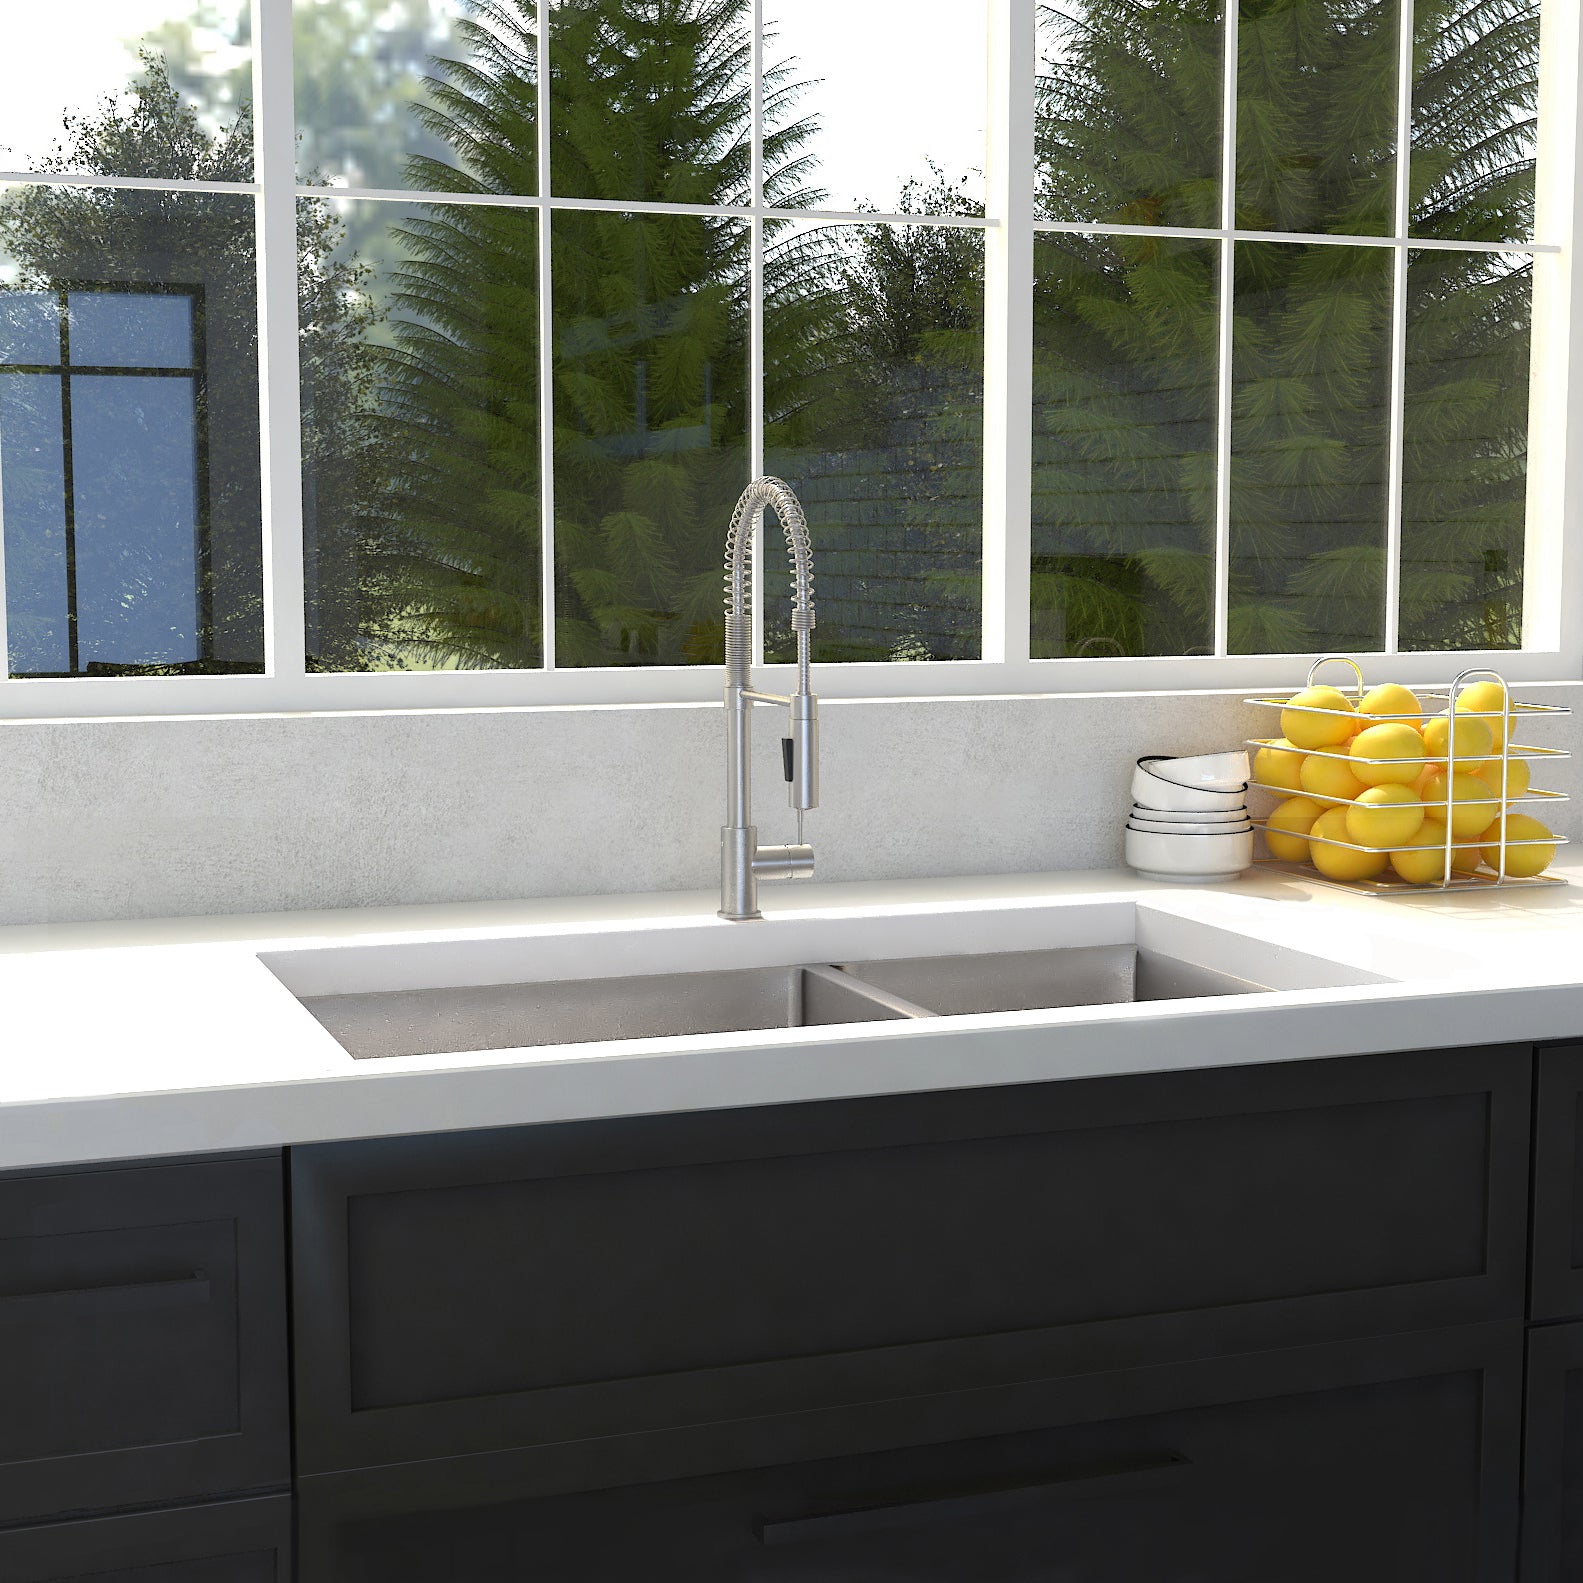 ZLINE 36 in. Chamonix Undermount Double Bowl Kitchen Sink with Bottom Grid  in Modern Farmhouse-style kitchen